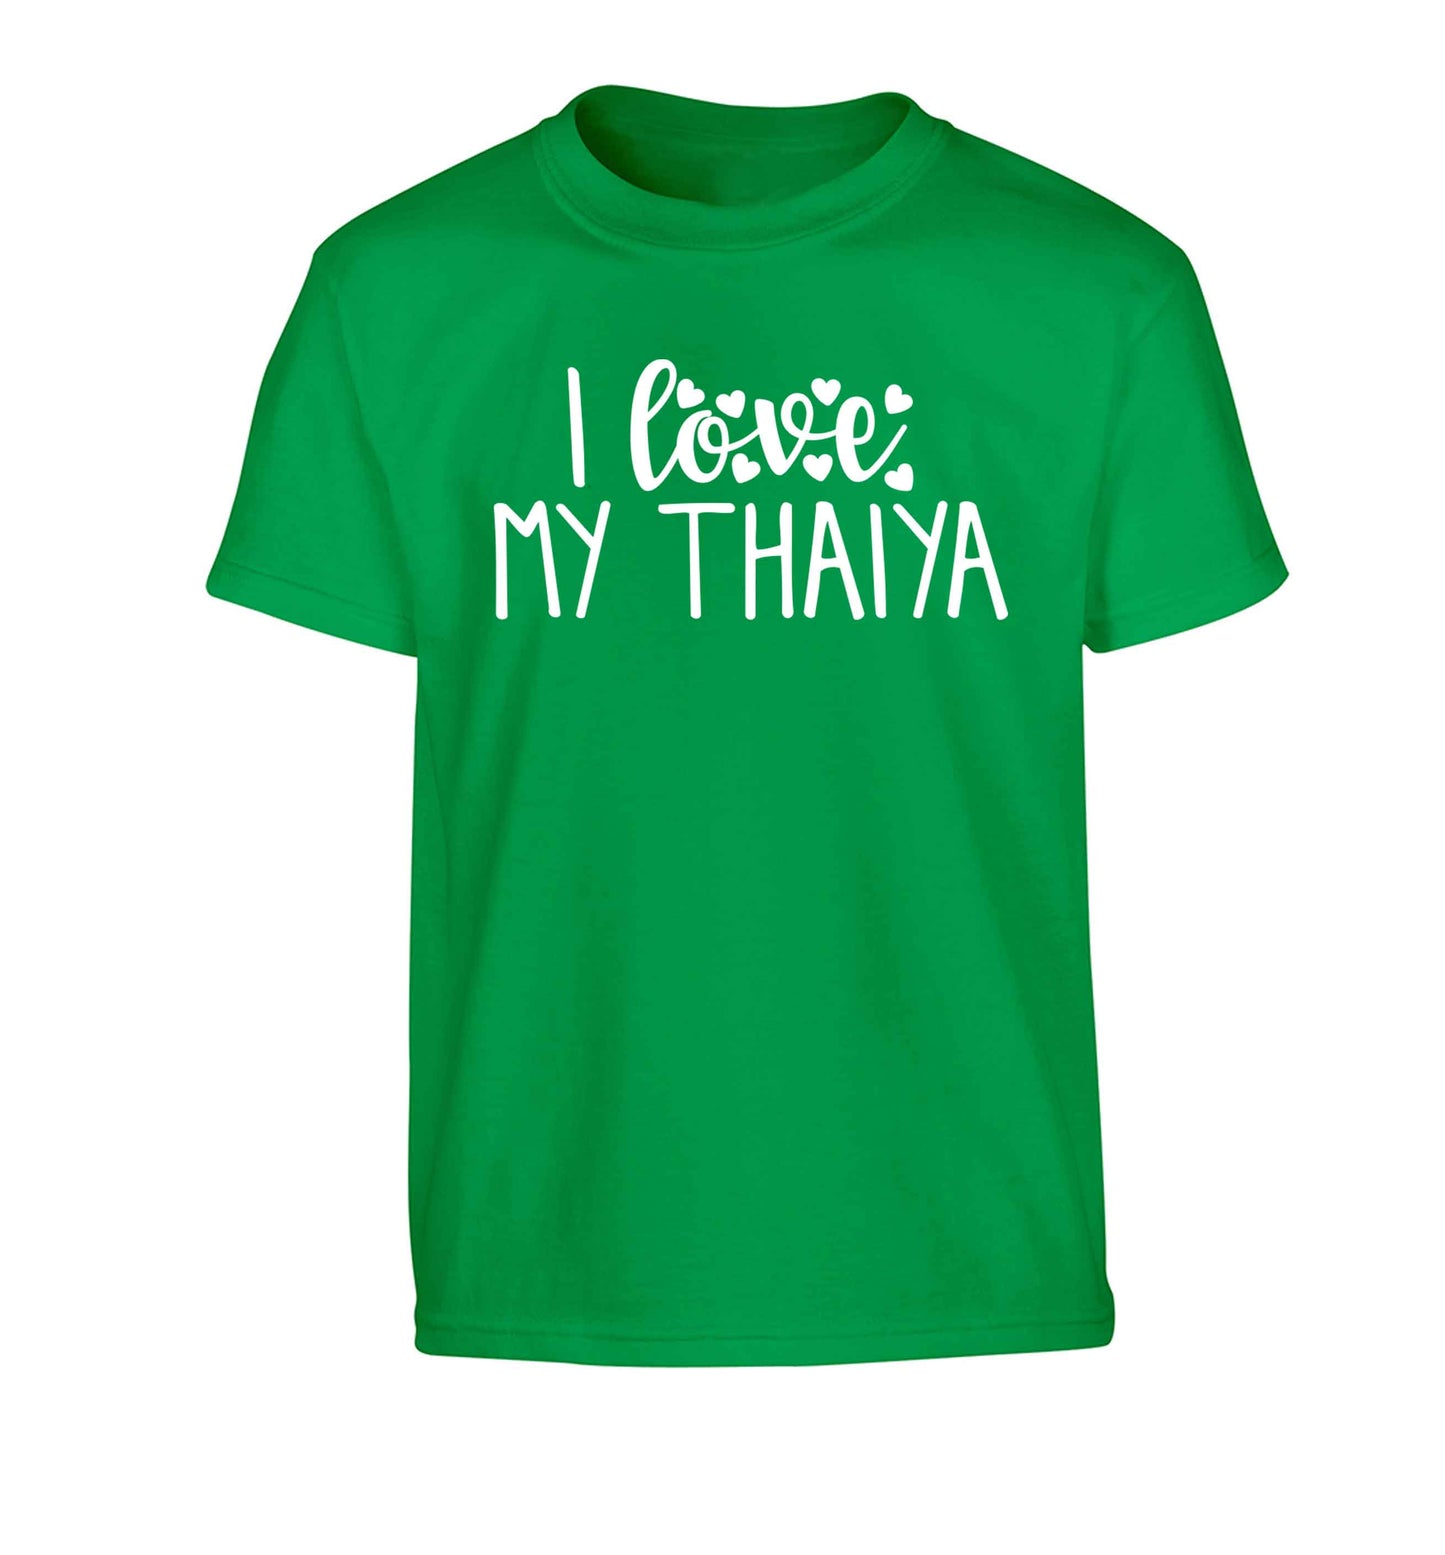 I love my thaiya Children's green Tshirt 12-13 Years